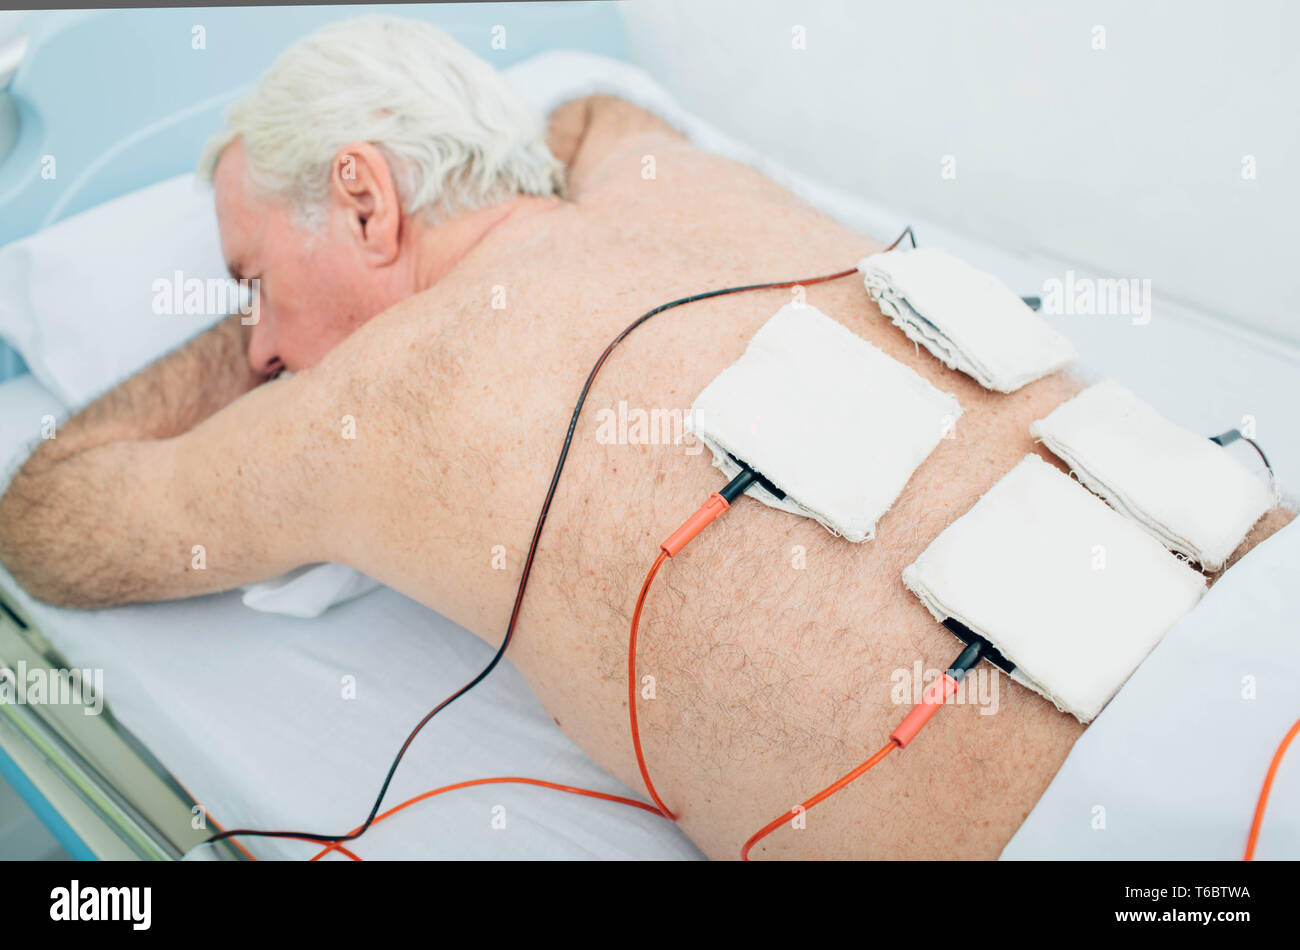 Die physiotherapeutische Behandlung. Ältere Patienten mit Ultraschall und Elektrotherapie Behandlung auf seinem Rücken Stockfoto